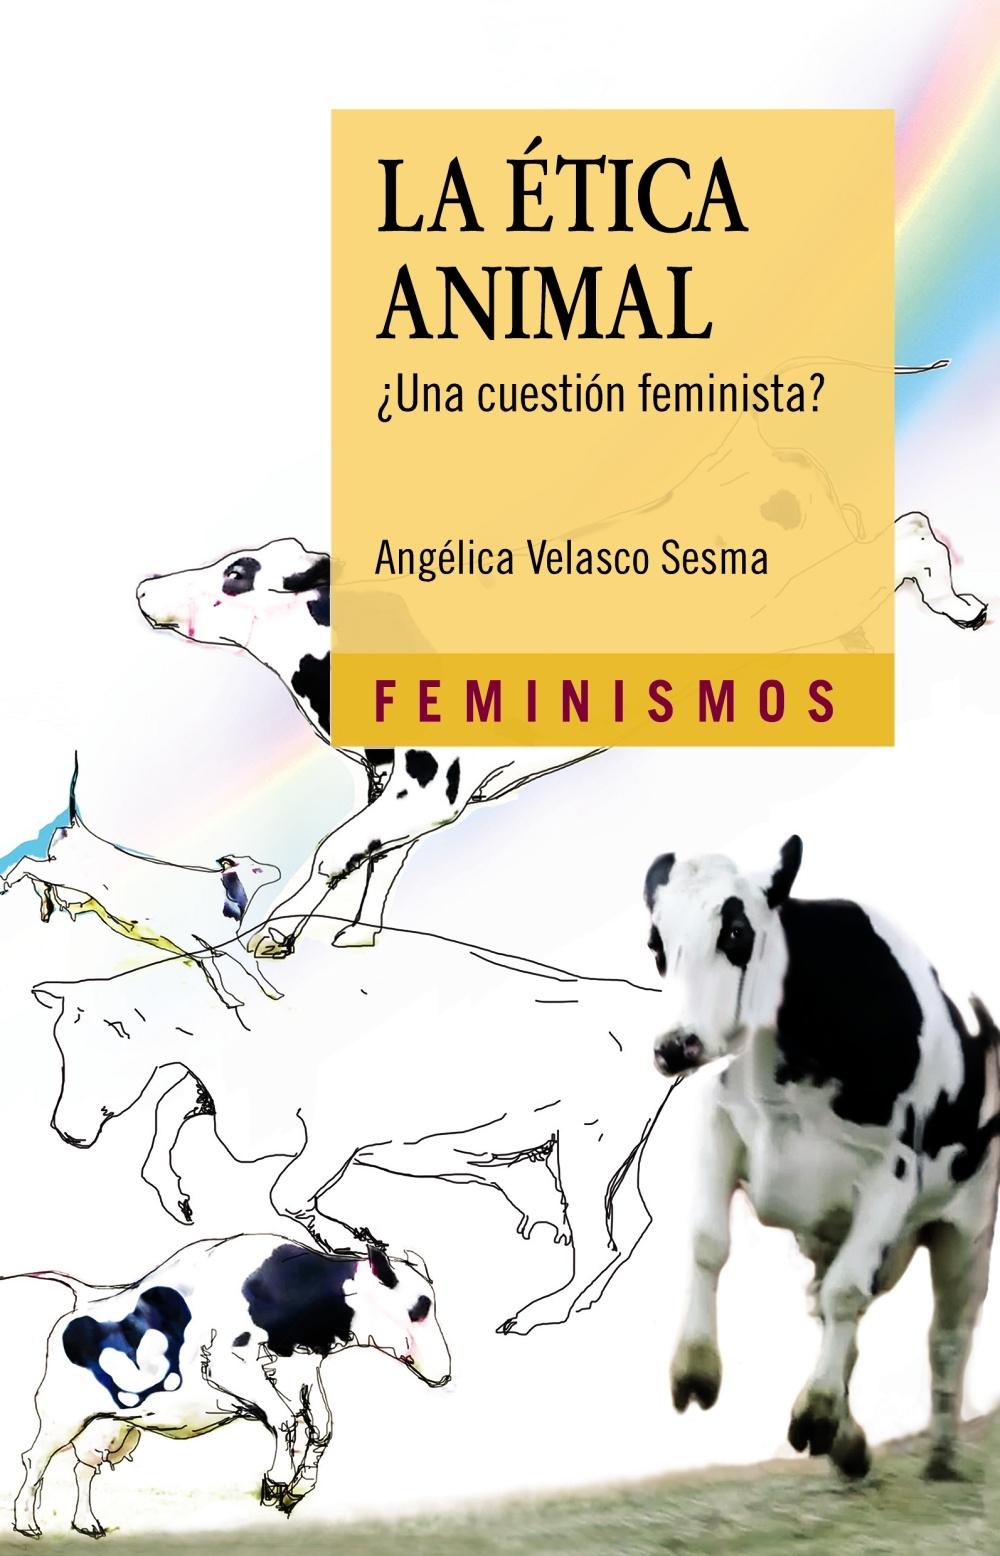 LA ÉTICA ANIMAL "¿UNA CUESTIÓN FEMINISTA?"